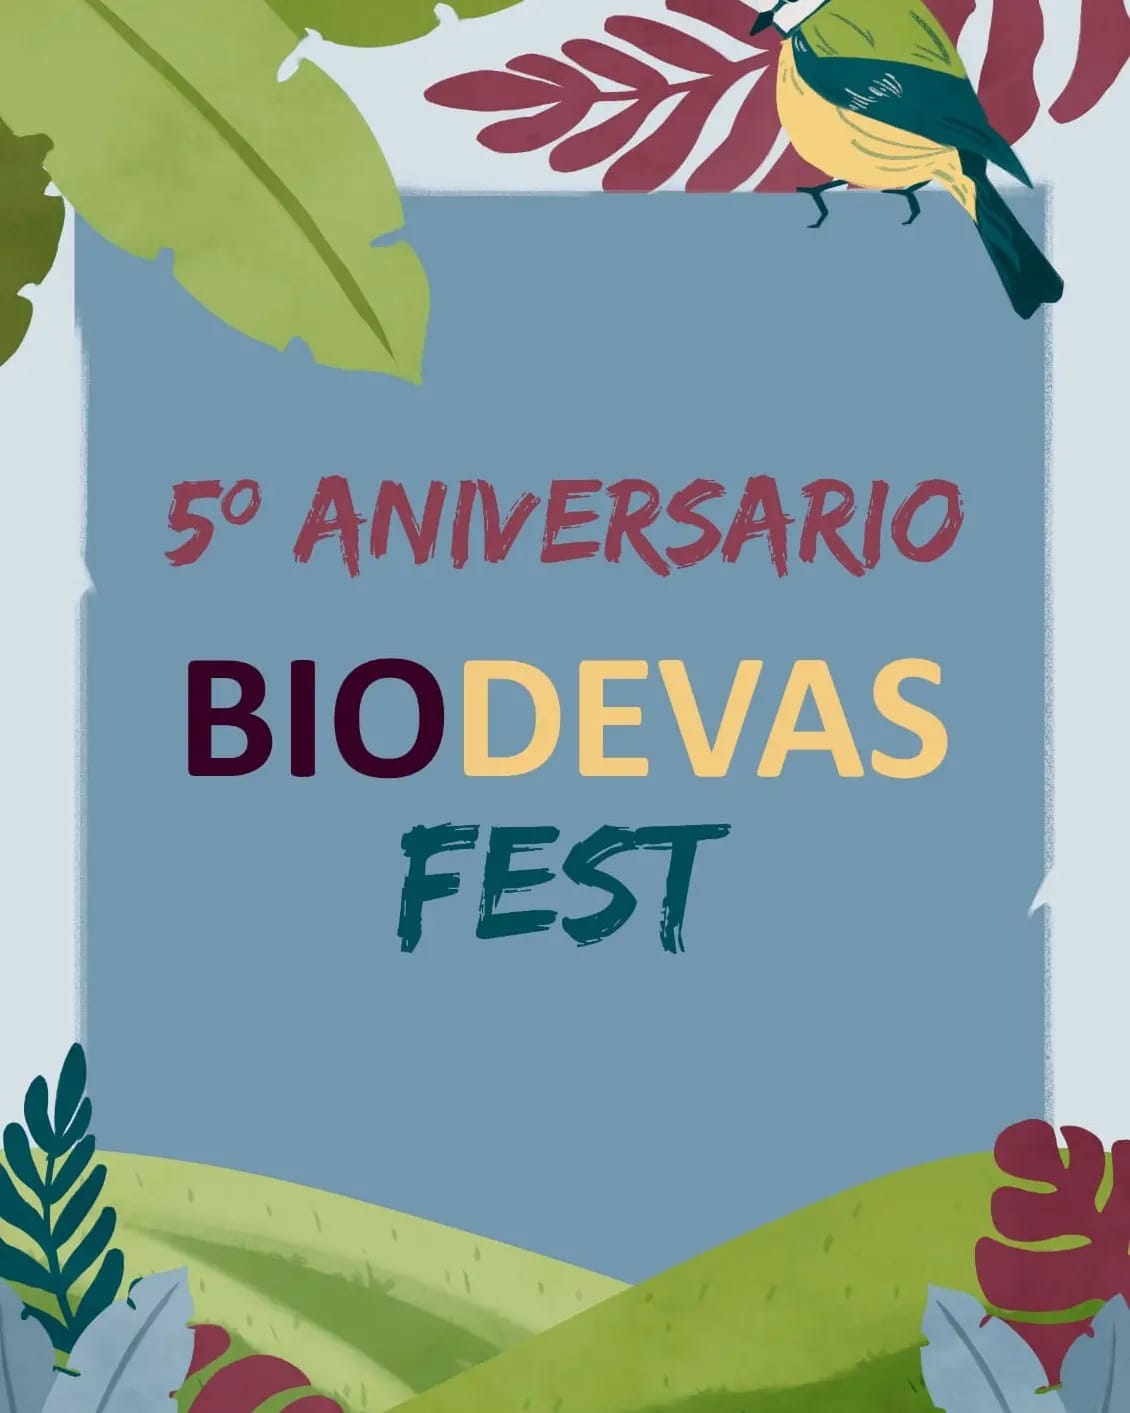 BIODEVASFEST - 5 años de conciencia con Biodevas